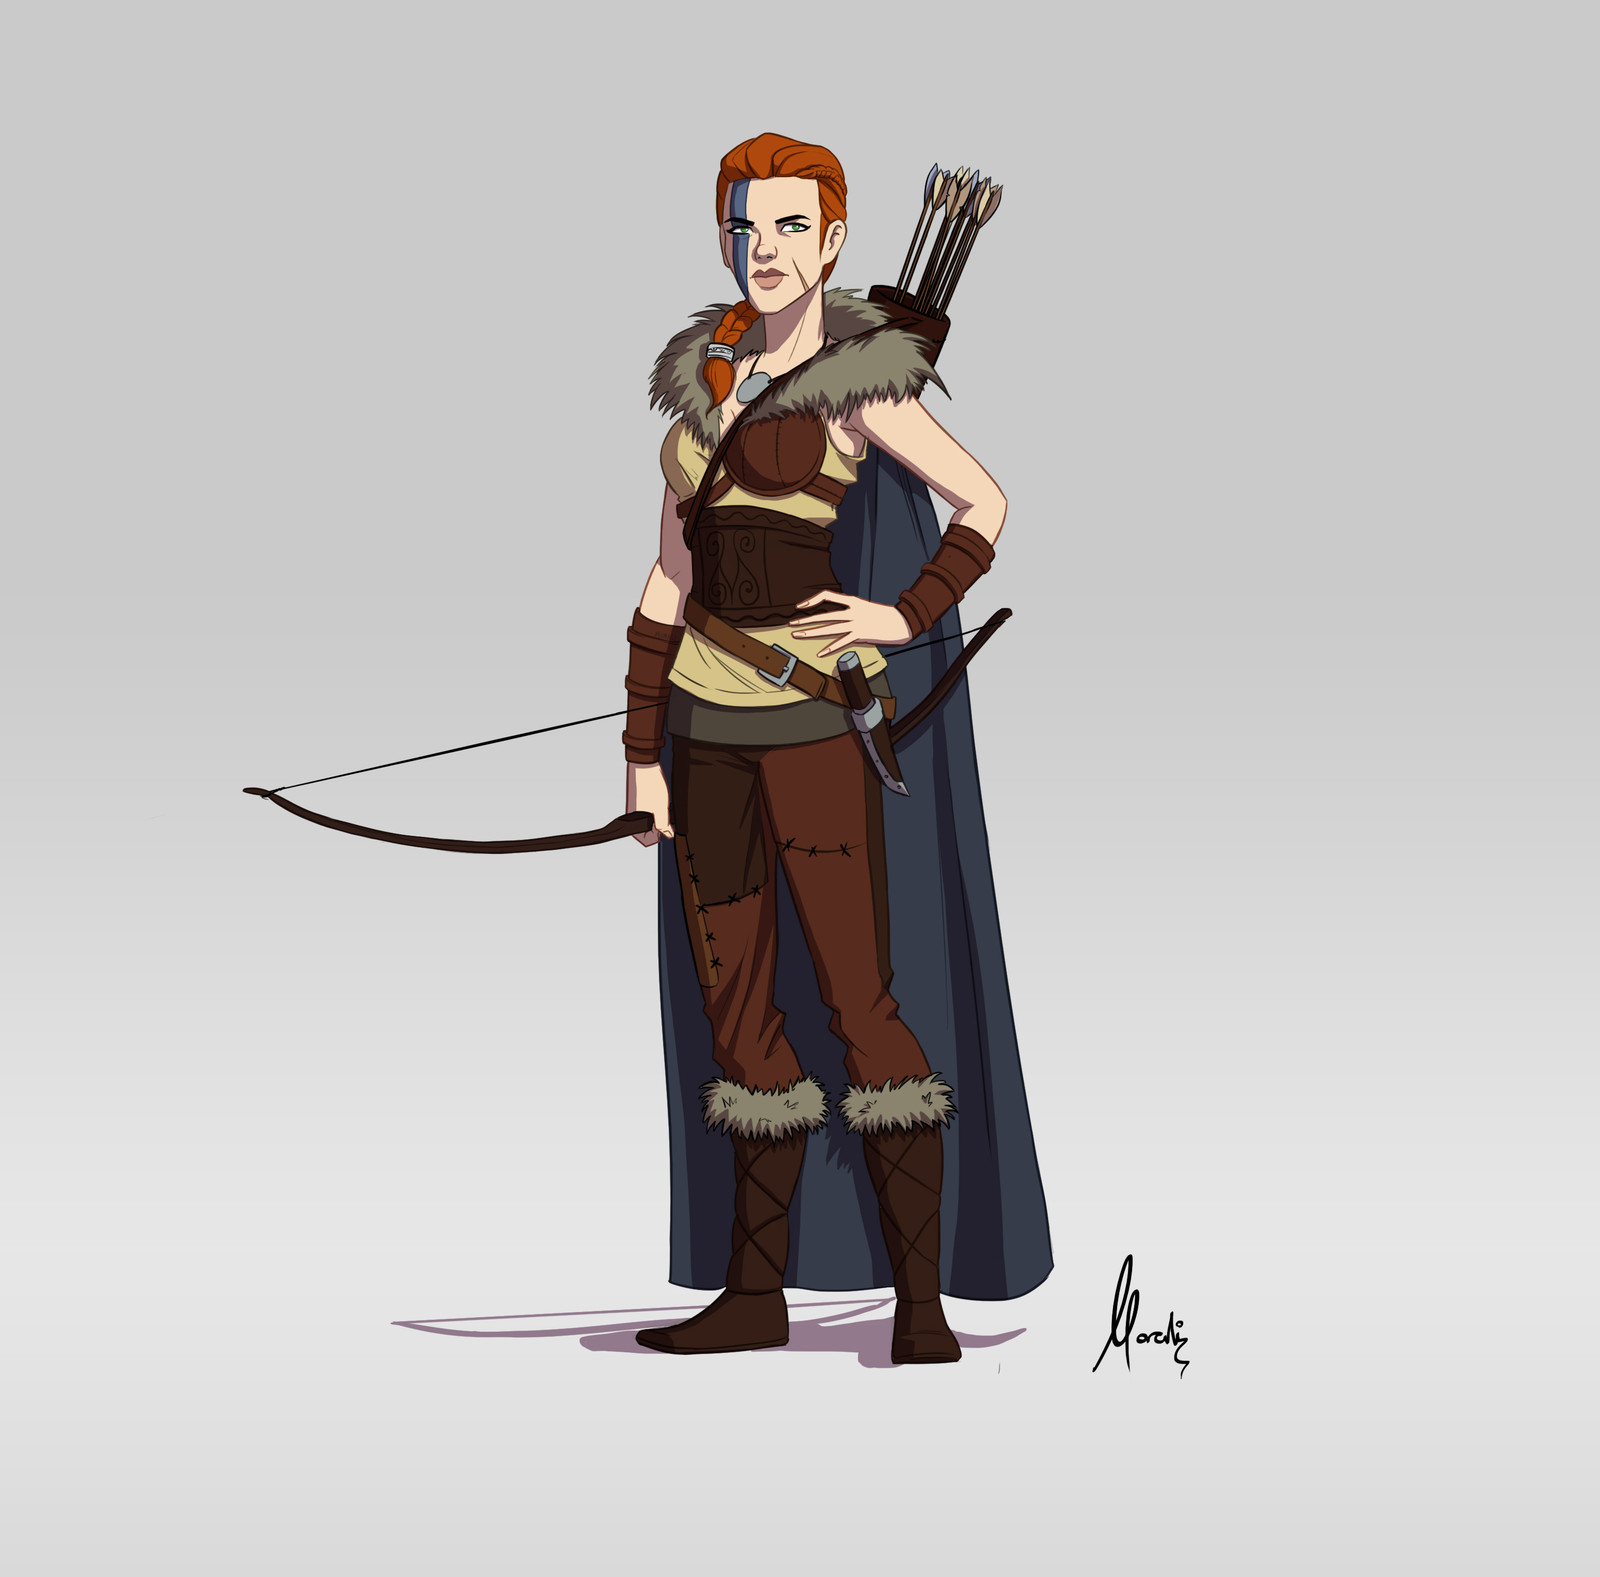 Runa: The archer